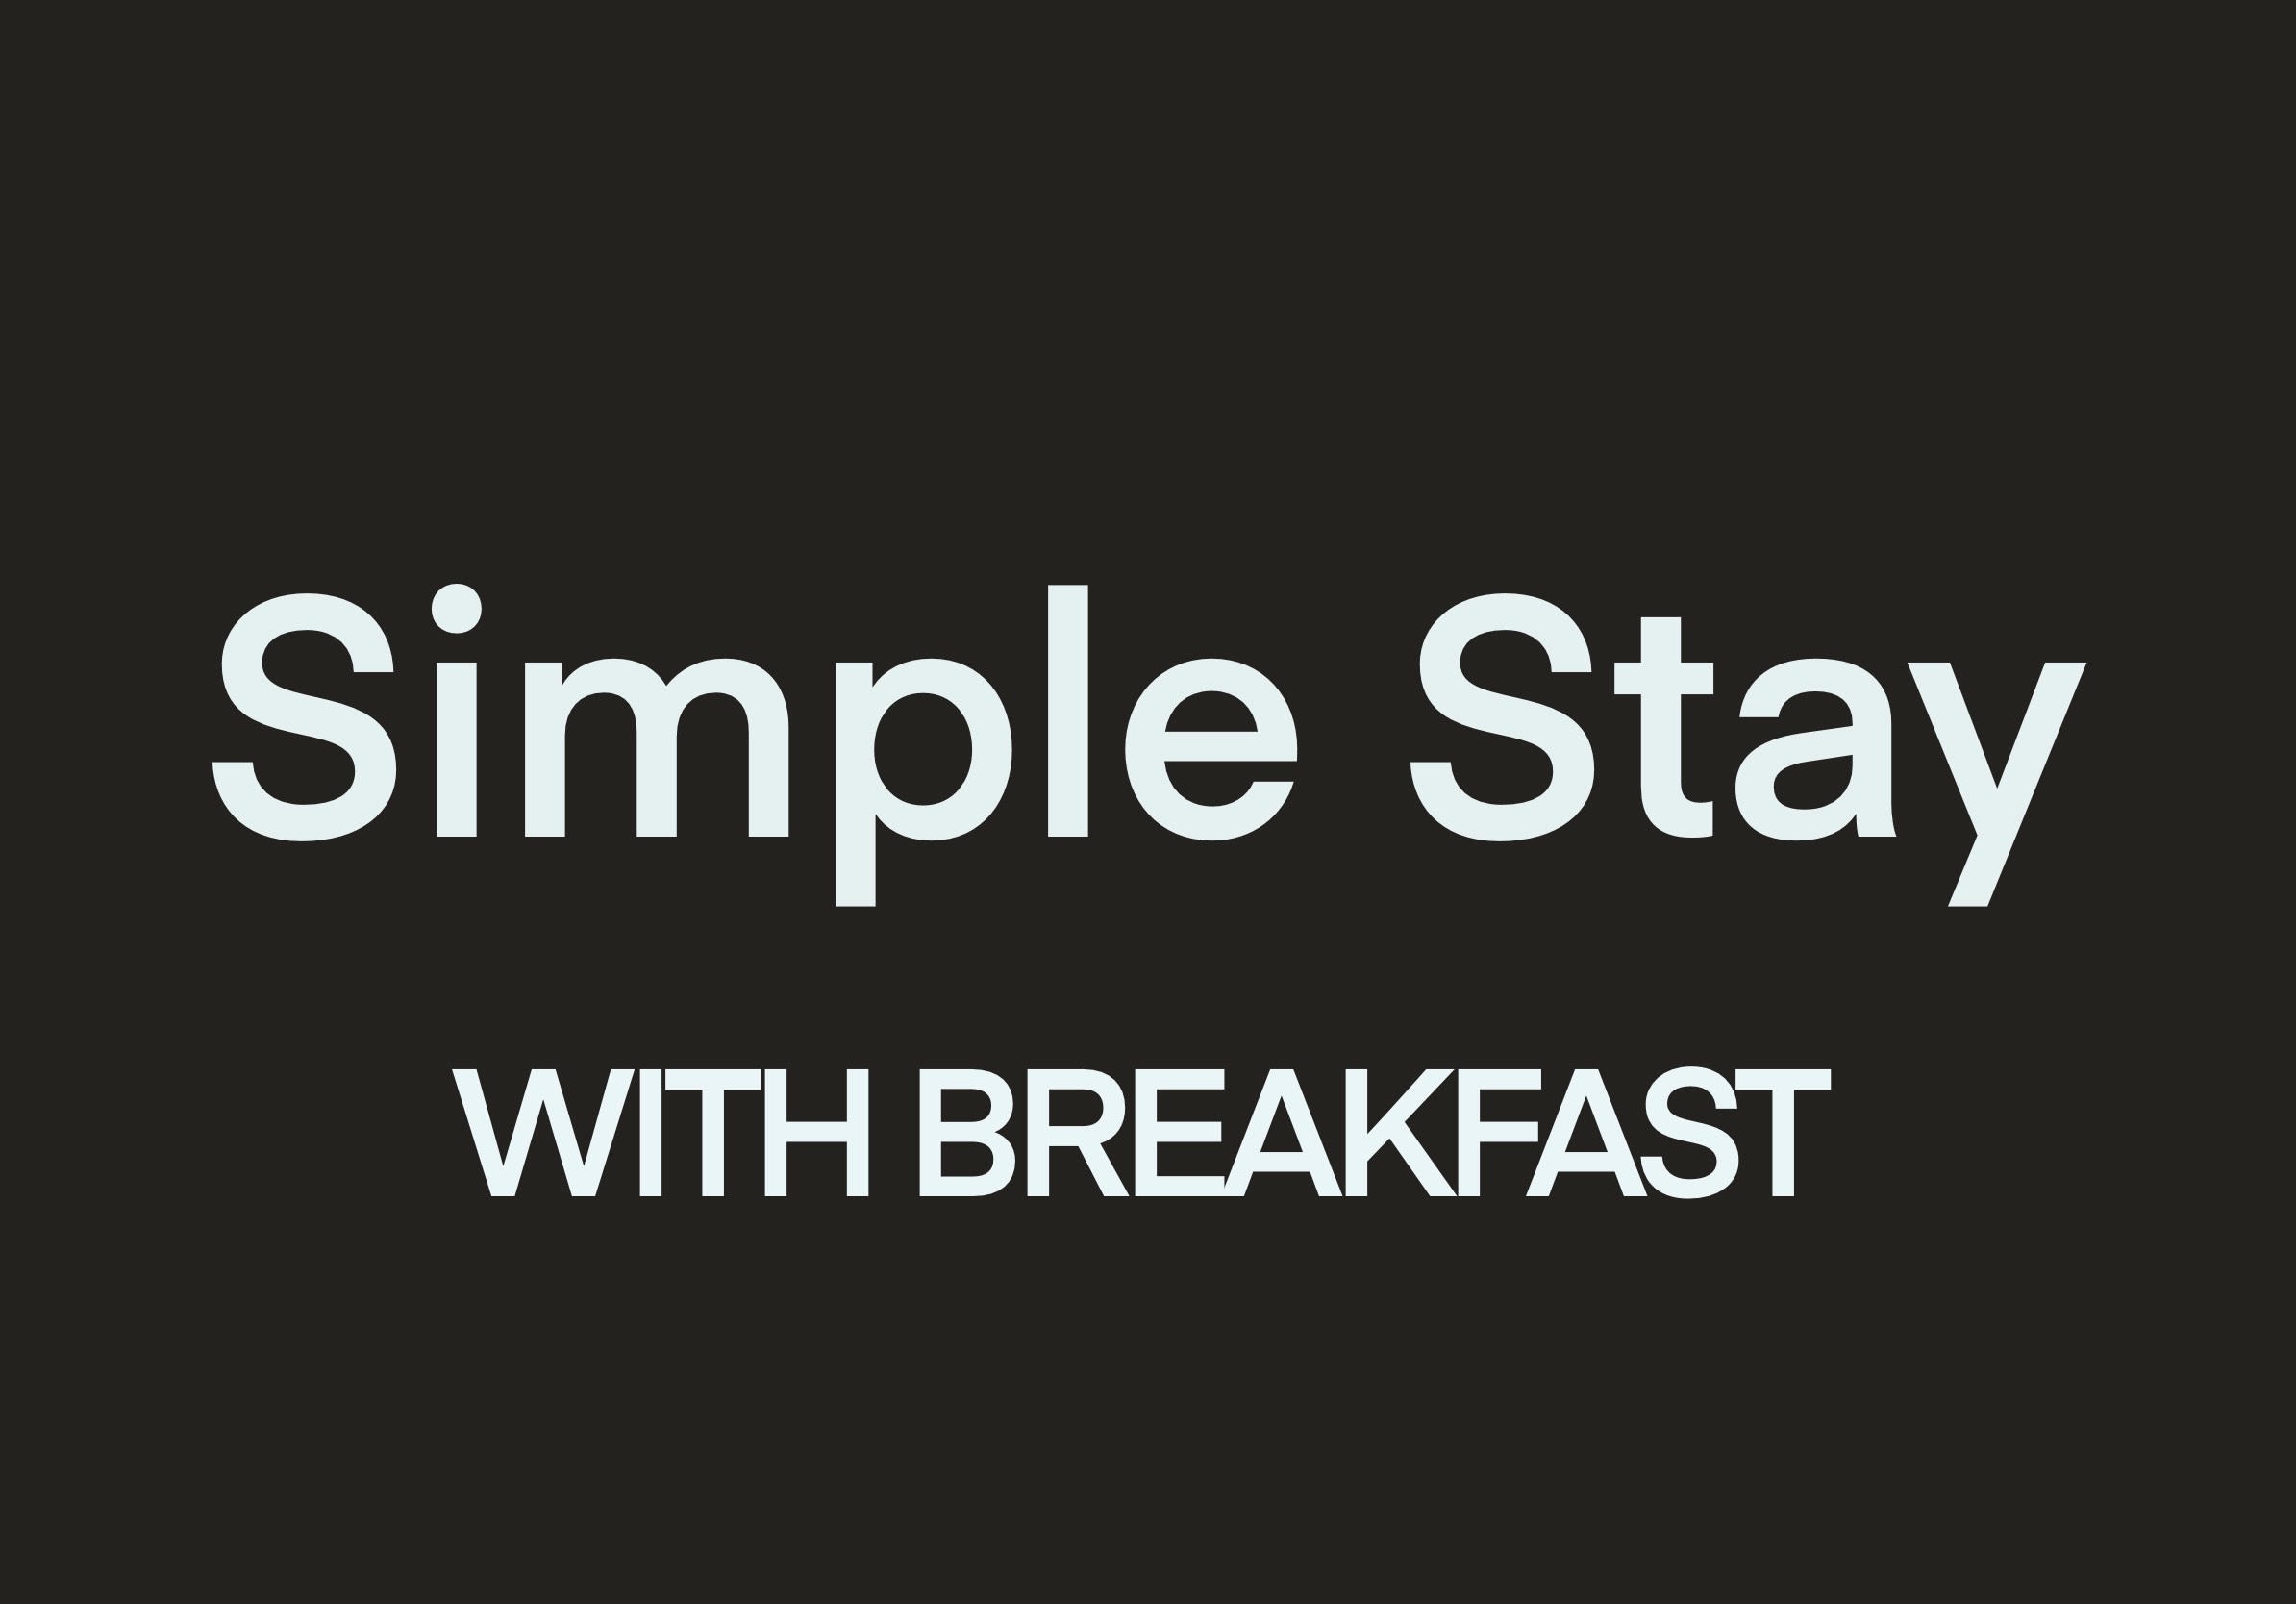 【朝食付き】シンプルステイ - Eatwell Breakfast - 